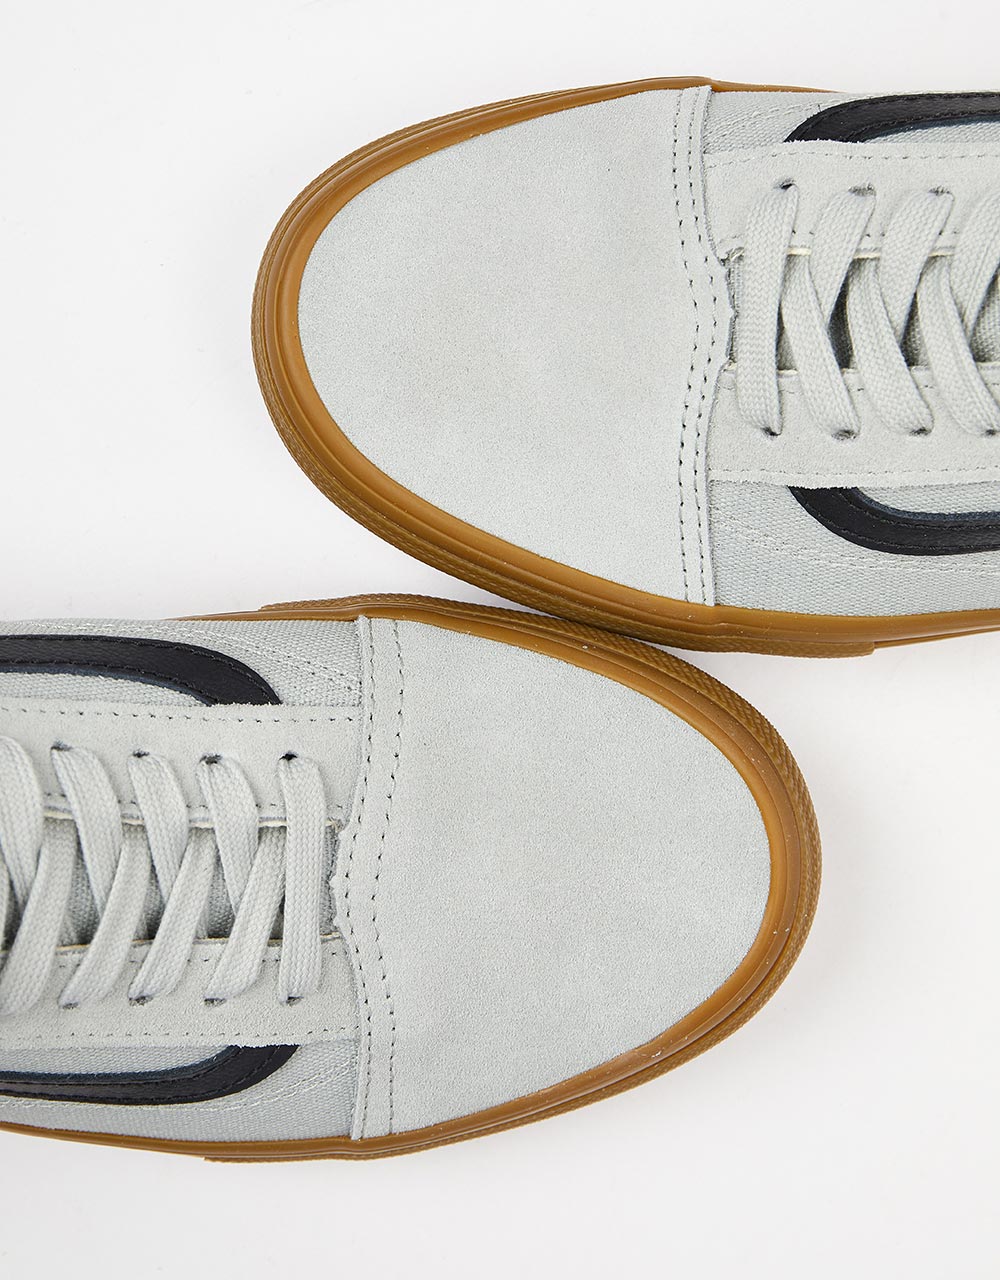 Vans Skate Old Skool Shoes - Grey/Gum